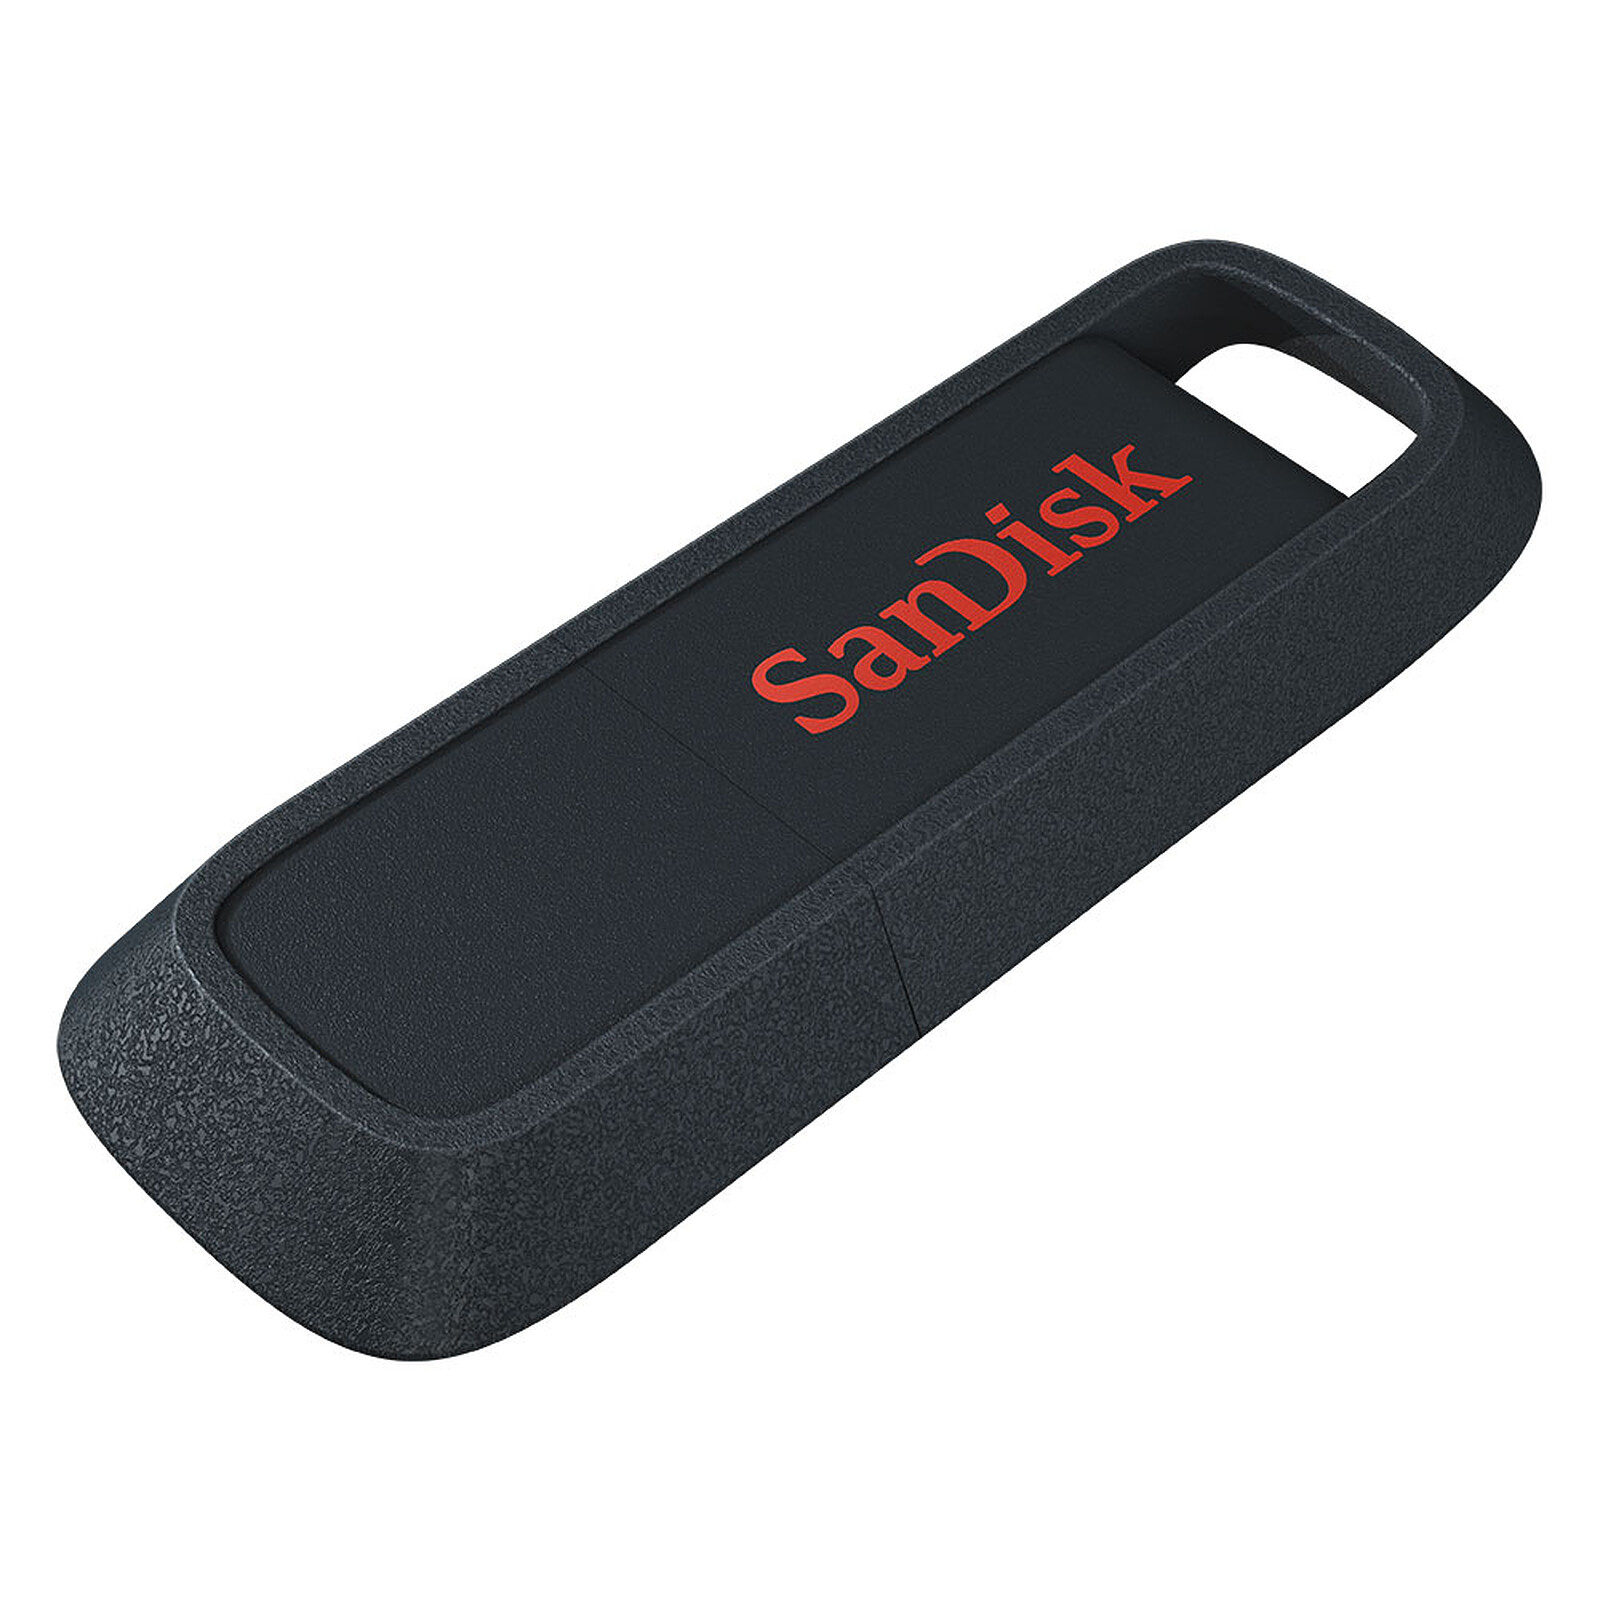 SanDisk Ultra Trek USB 3.0 - 64 Go - Clé USB - LDLC